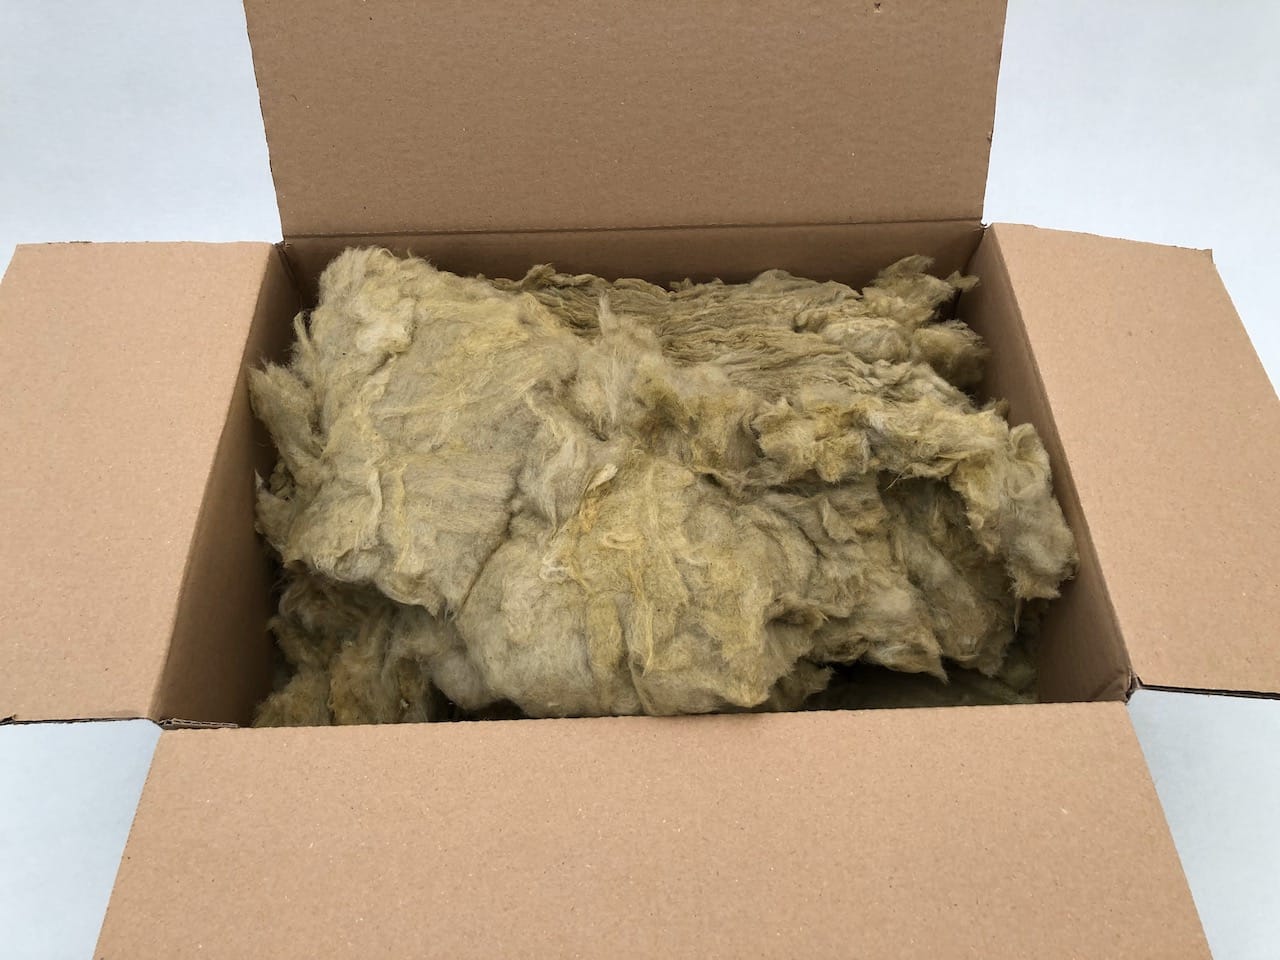 http://www.kaminladen.de/cdn/shop/products/steinwolle-lose-mineralwolle-karton-1kg-01.jpg?v=1685370729